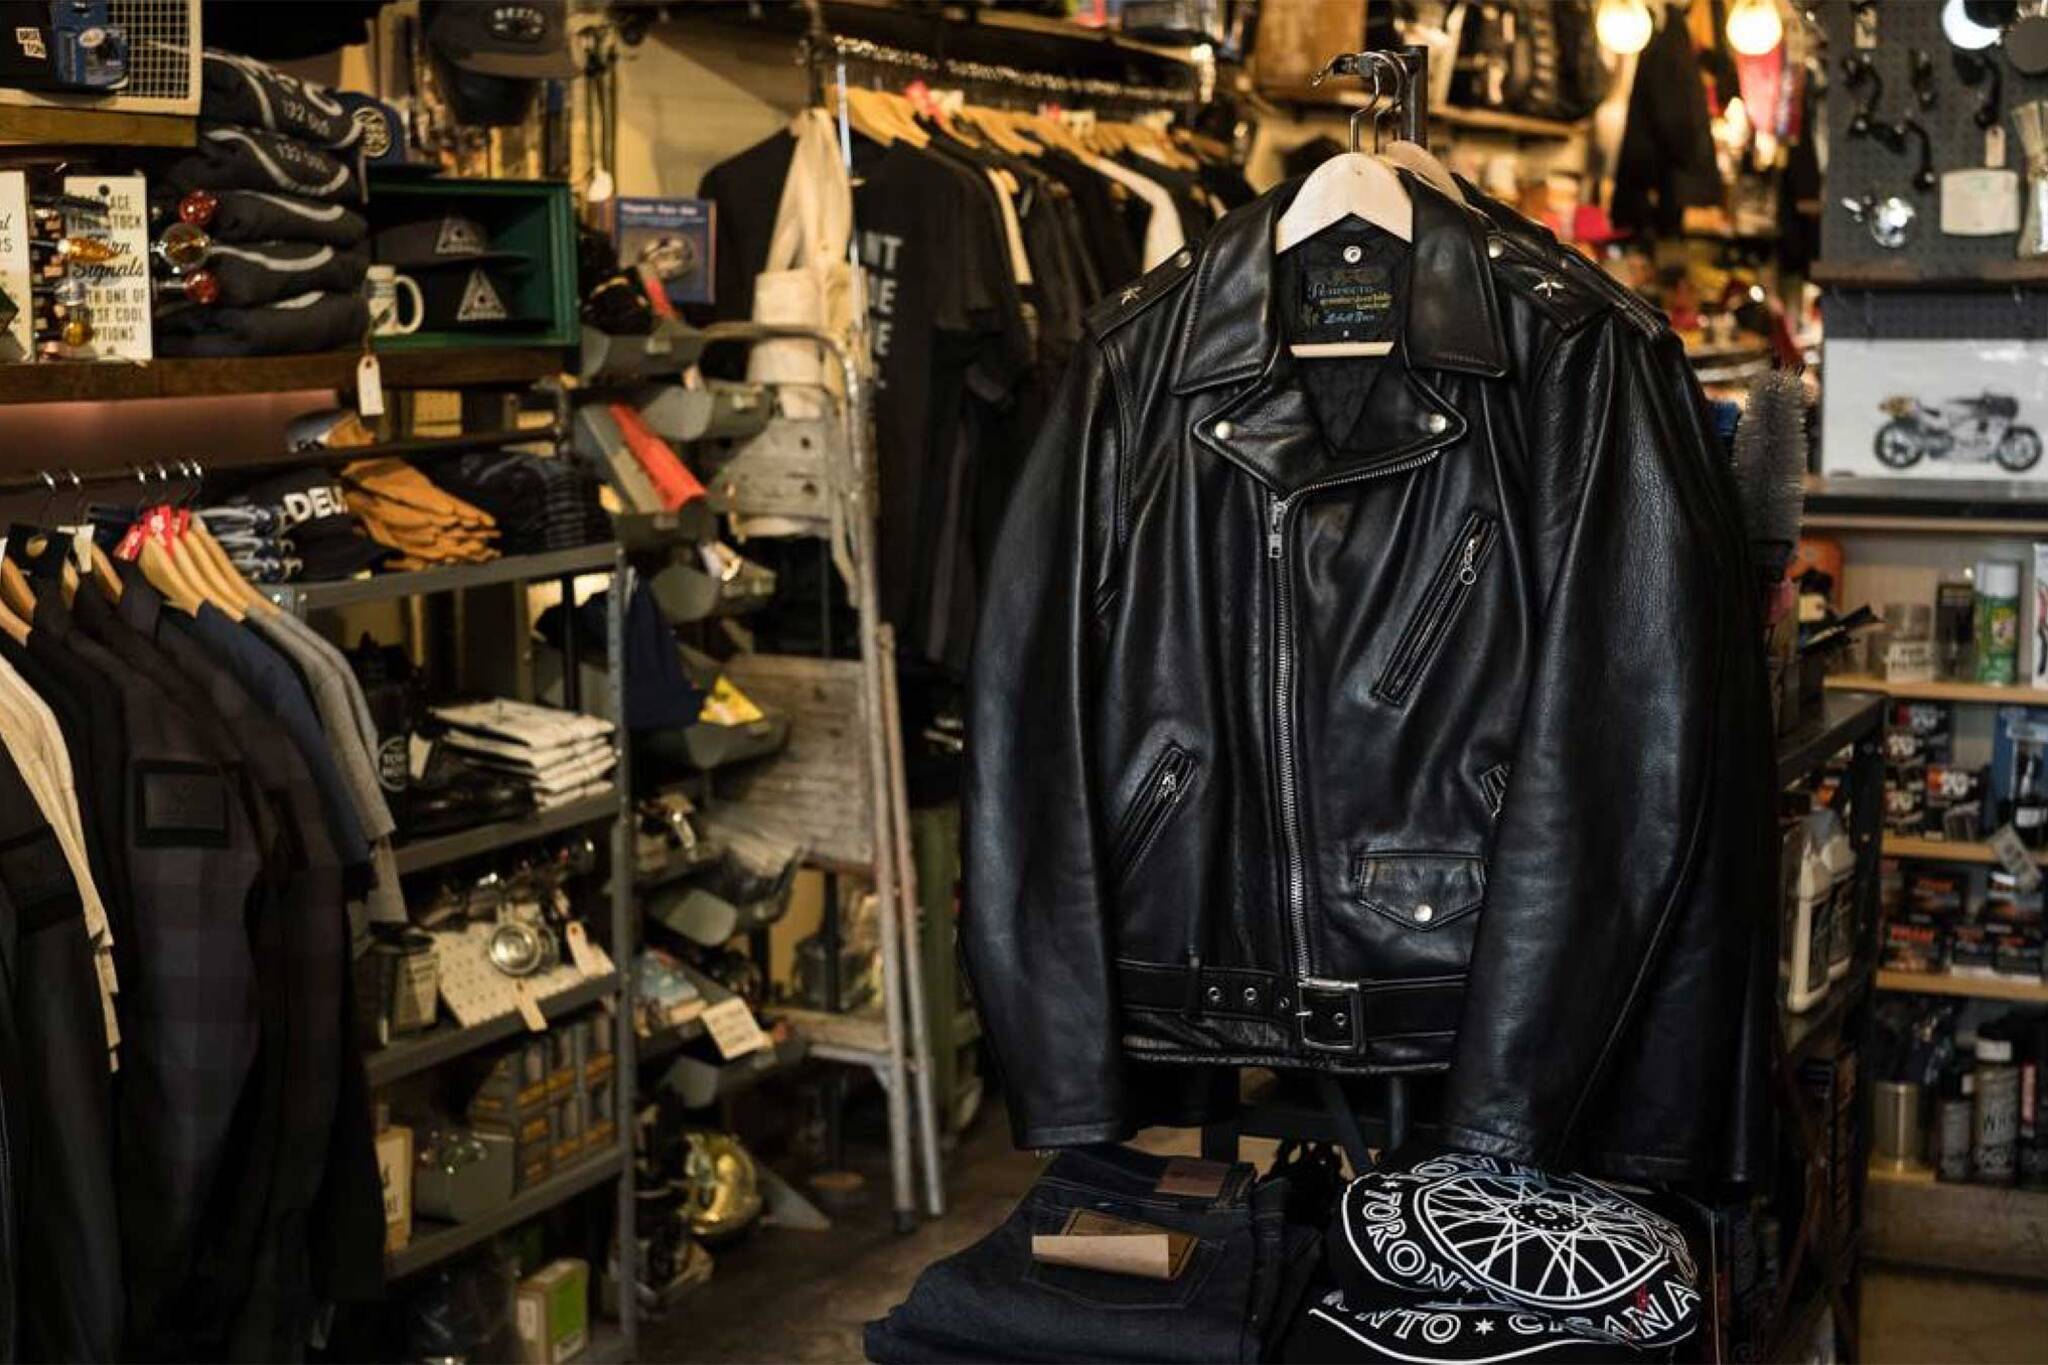 leather jacket toronto